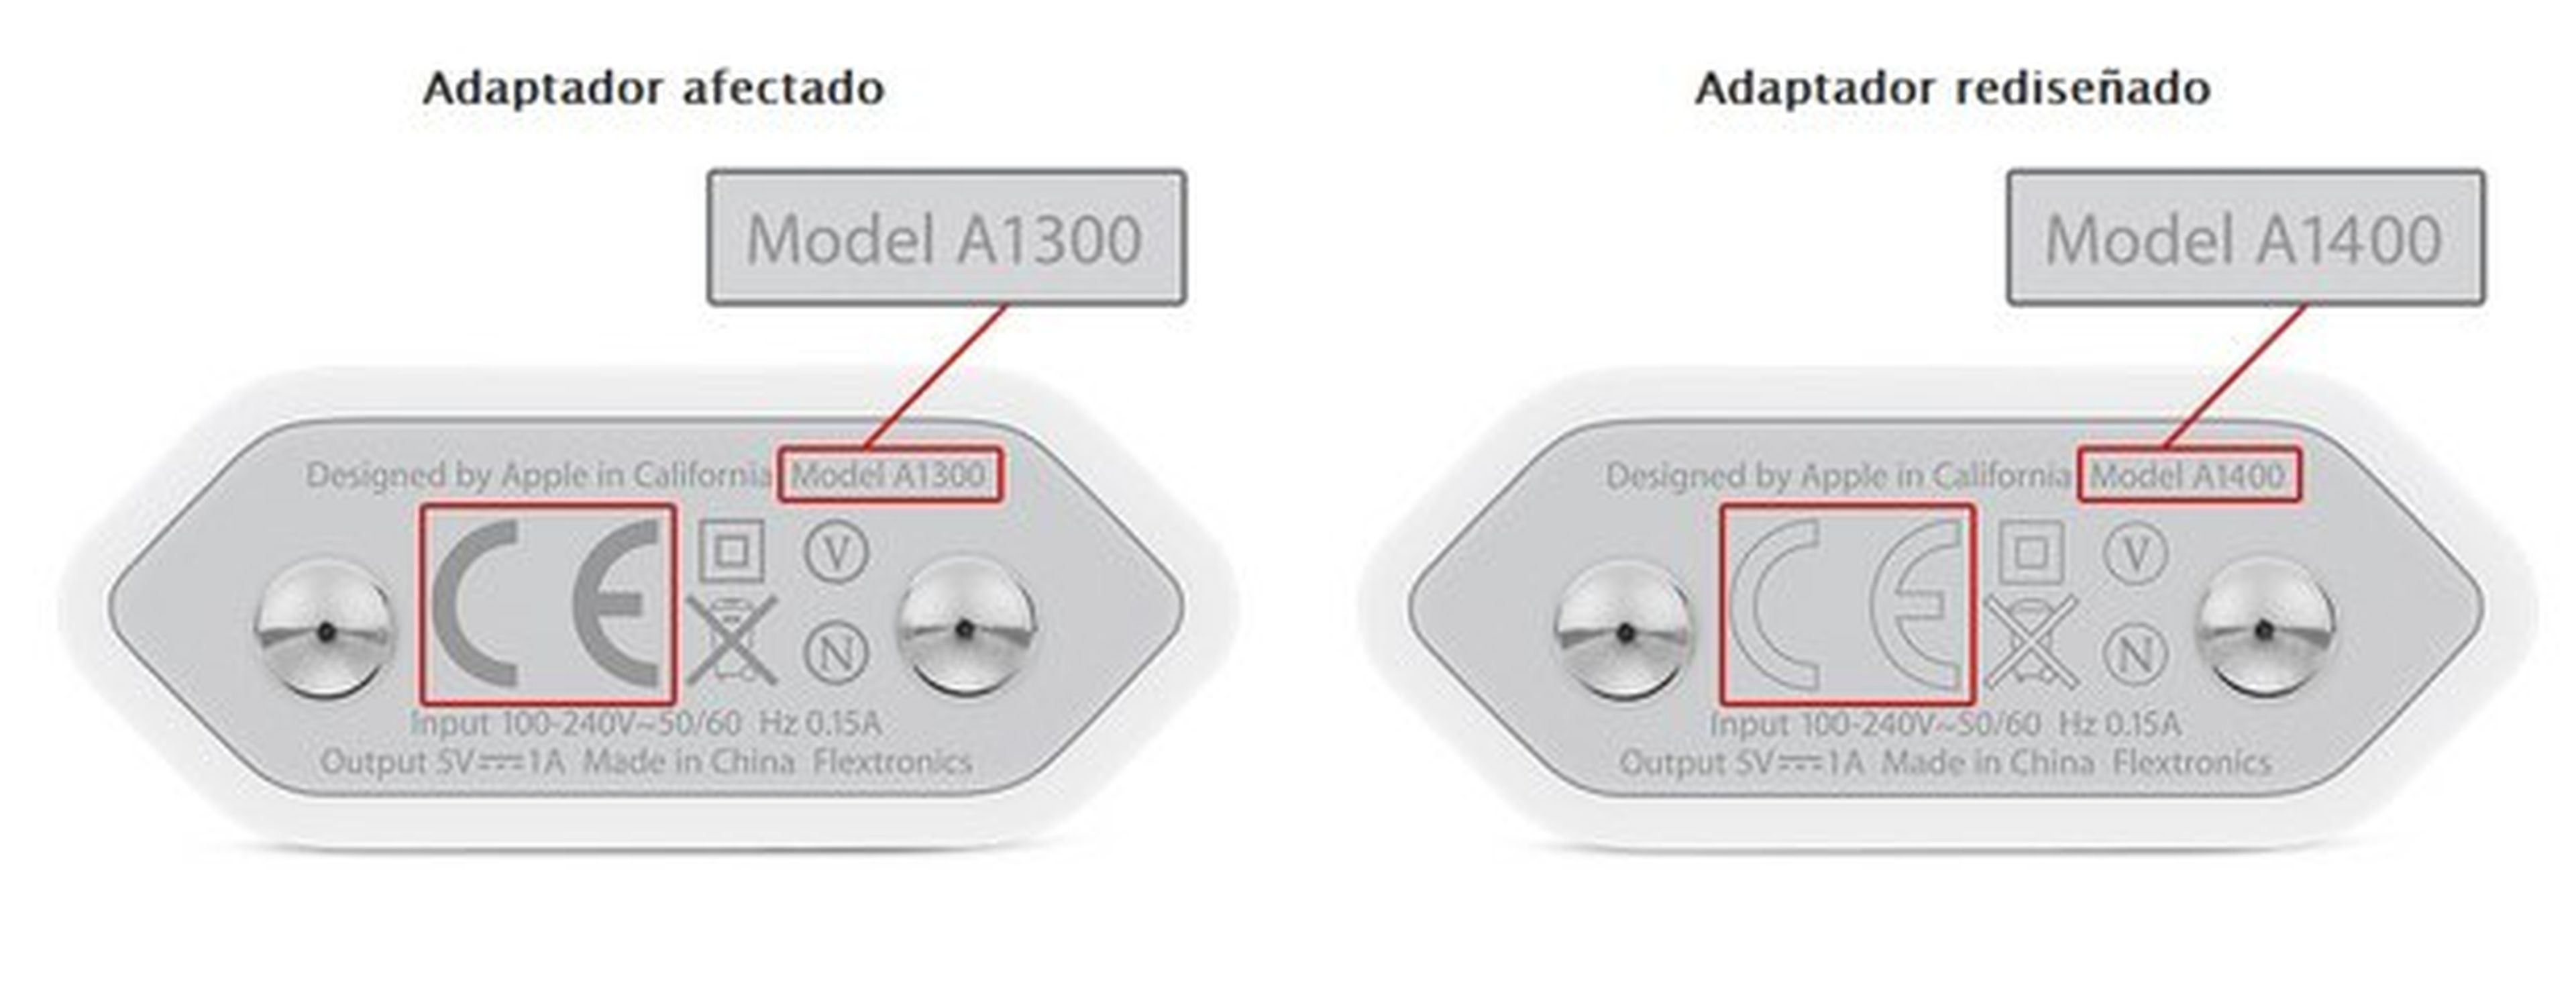 Apple cambia en España adaptador de corriente USB de iPhone por riesgo